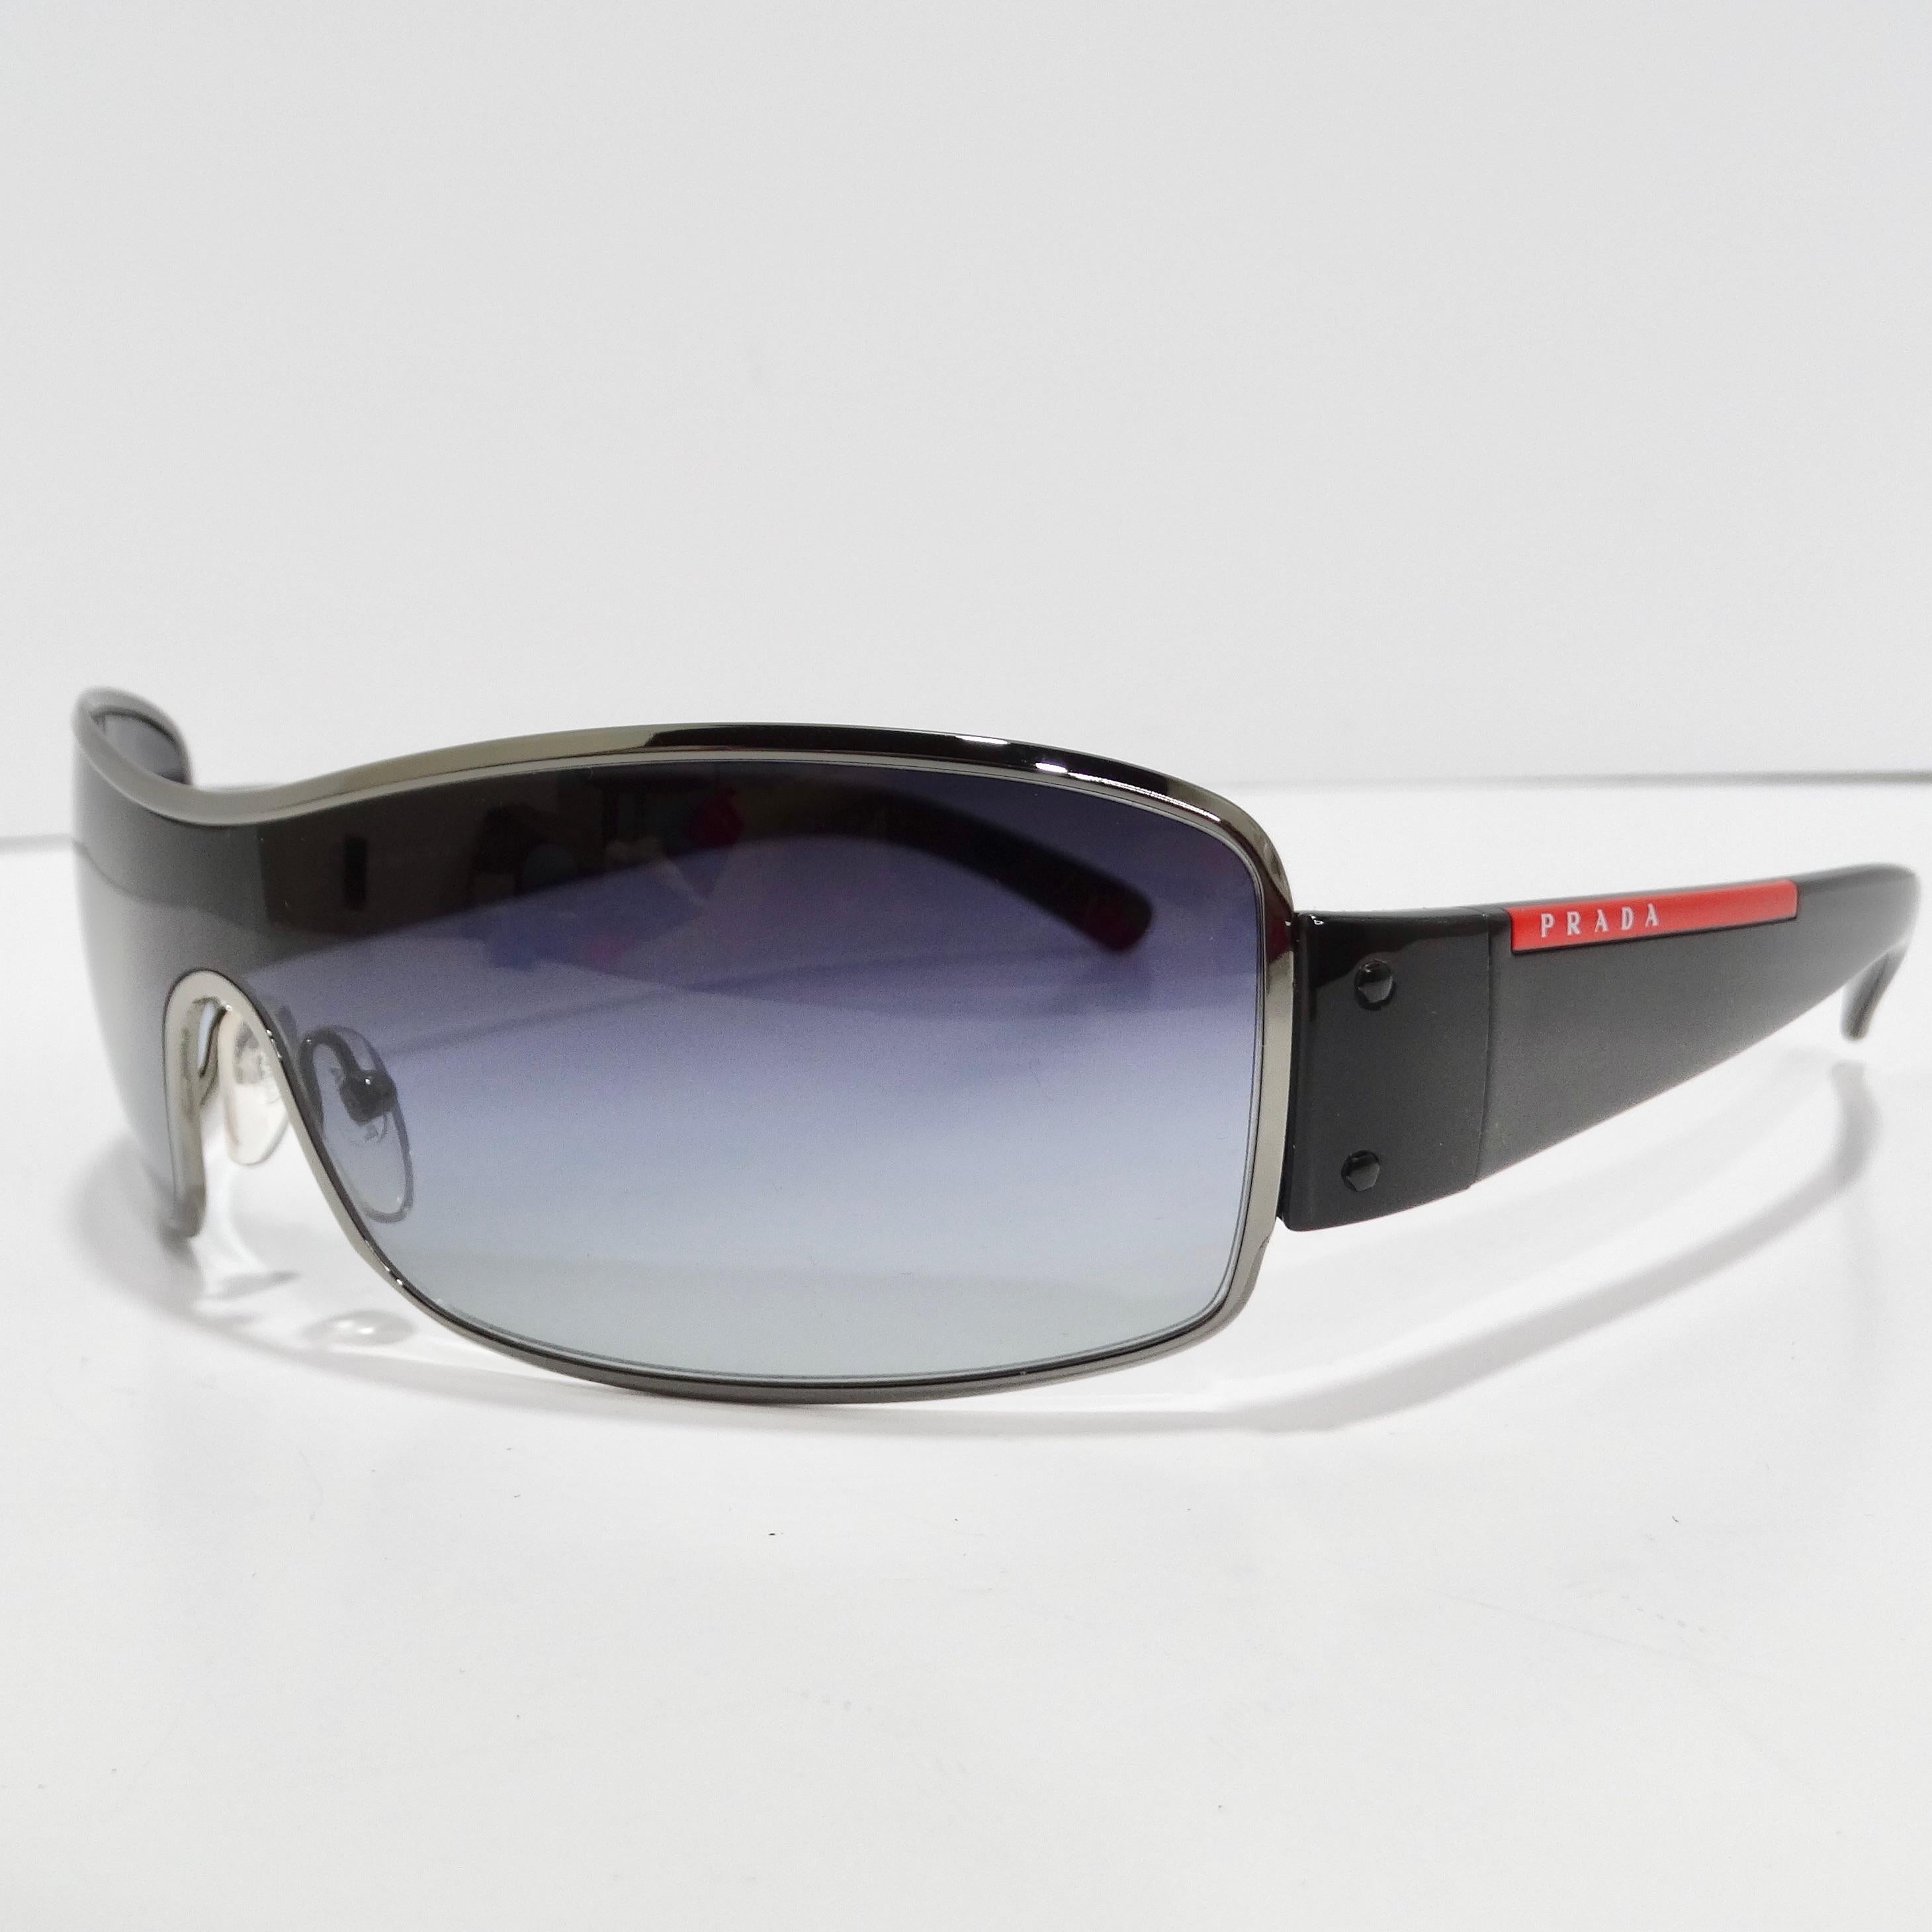 Entrez dans l'incarnation du style des années 1990 avec les lunettes de soleil Prada 1990 Silver Tone Shield. Ces lunettes de soleil classiques de style bouclier sont dotées de fines montures argentées, de branches noires élégantes ornées d'un logo